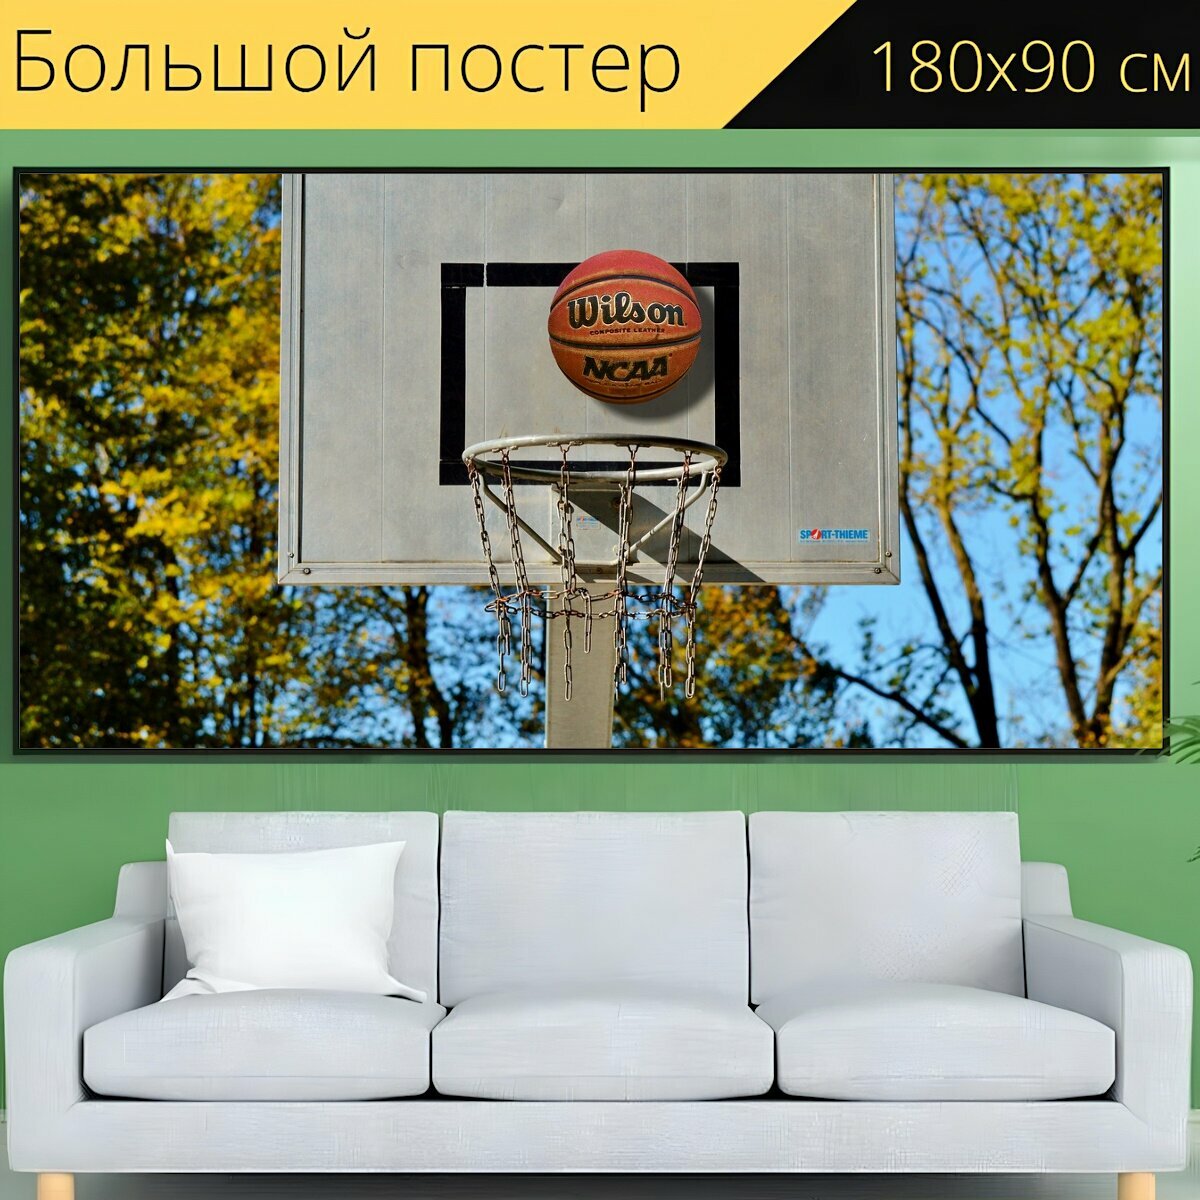 Большой постер "Баскетбольное кольцо, баскетбол, мяч спортивный" 180 x 90 см. для интерьера